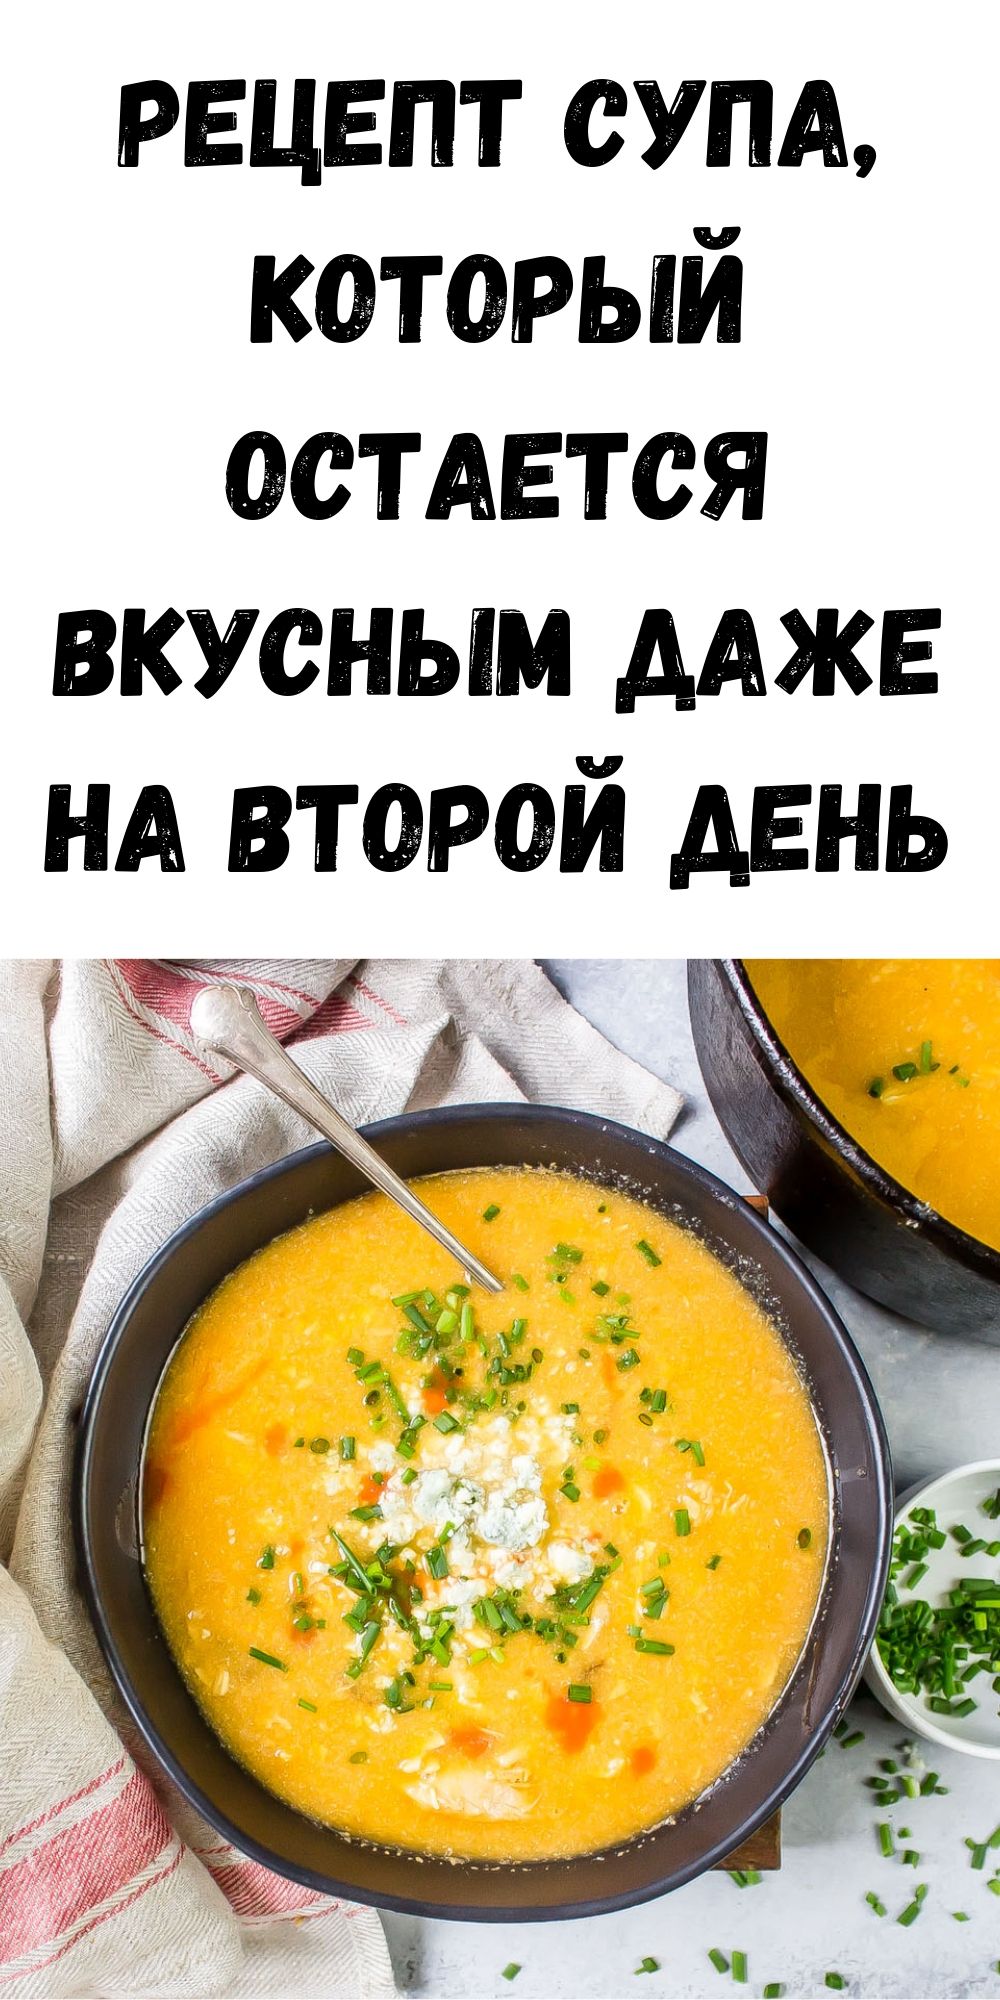 Рецепт супа, который остается вкусным даже на второй день